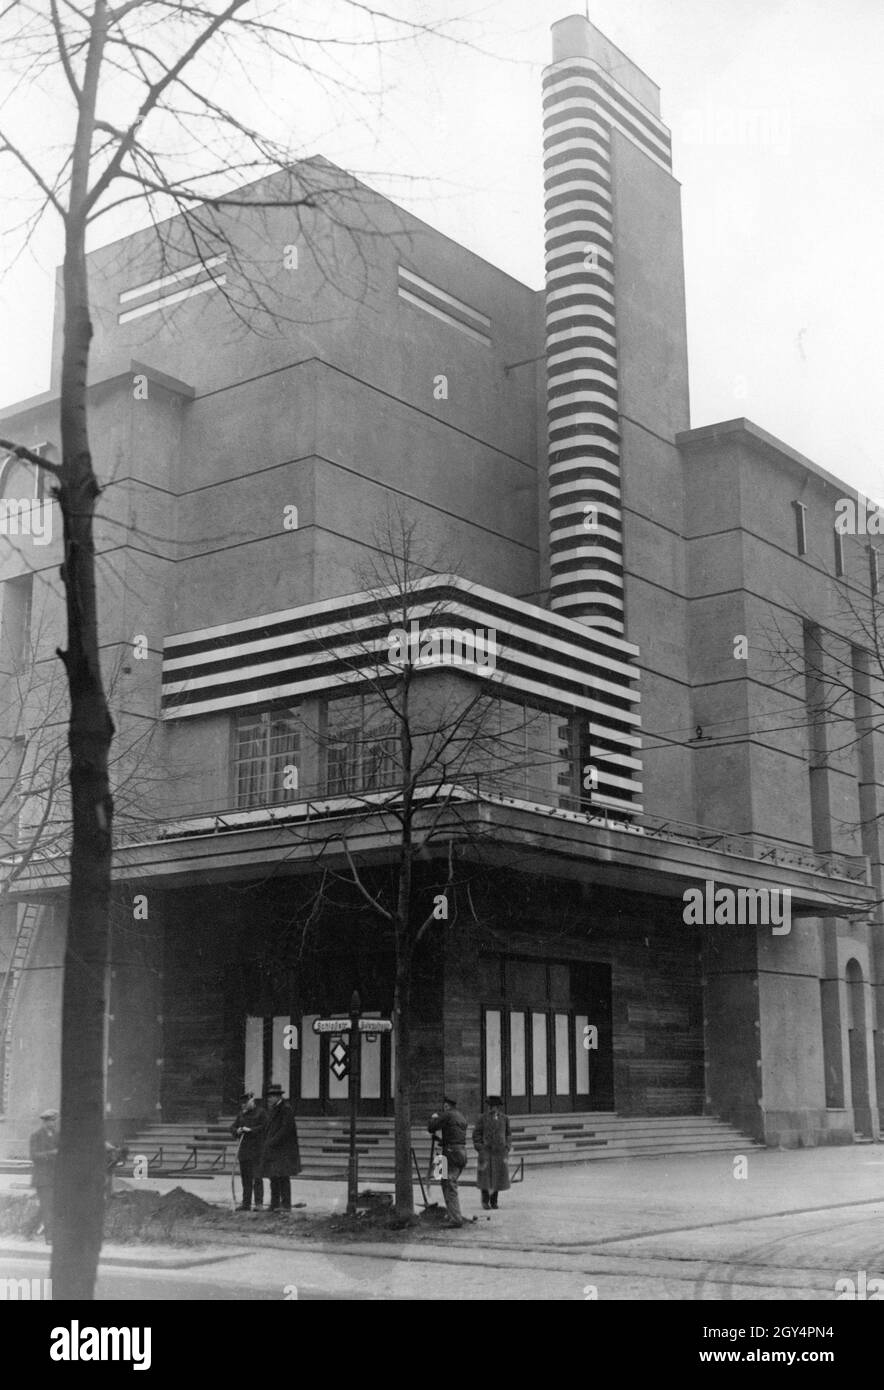 Le 26 janvier 1928, le Titania-Palast, un cinéma moderne à l'époque, a été ouvert dans la Schloßstraße, à l'angle de Gutsmuthsstraße à Berlin-Steglitz.Le bâtiment de 2000 places est doté d'une tour lumineuse de 37 mètres de haut avec 160000 bougies.Sur la photo, des préparatifs finaux sont en cours pour la cérémonie d'ouverture officielle.[traduction automatique] Banque D'Images